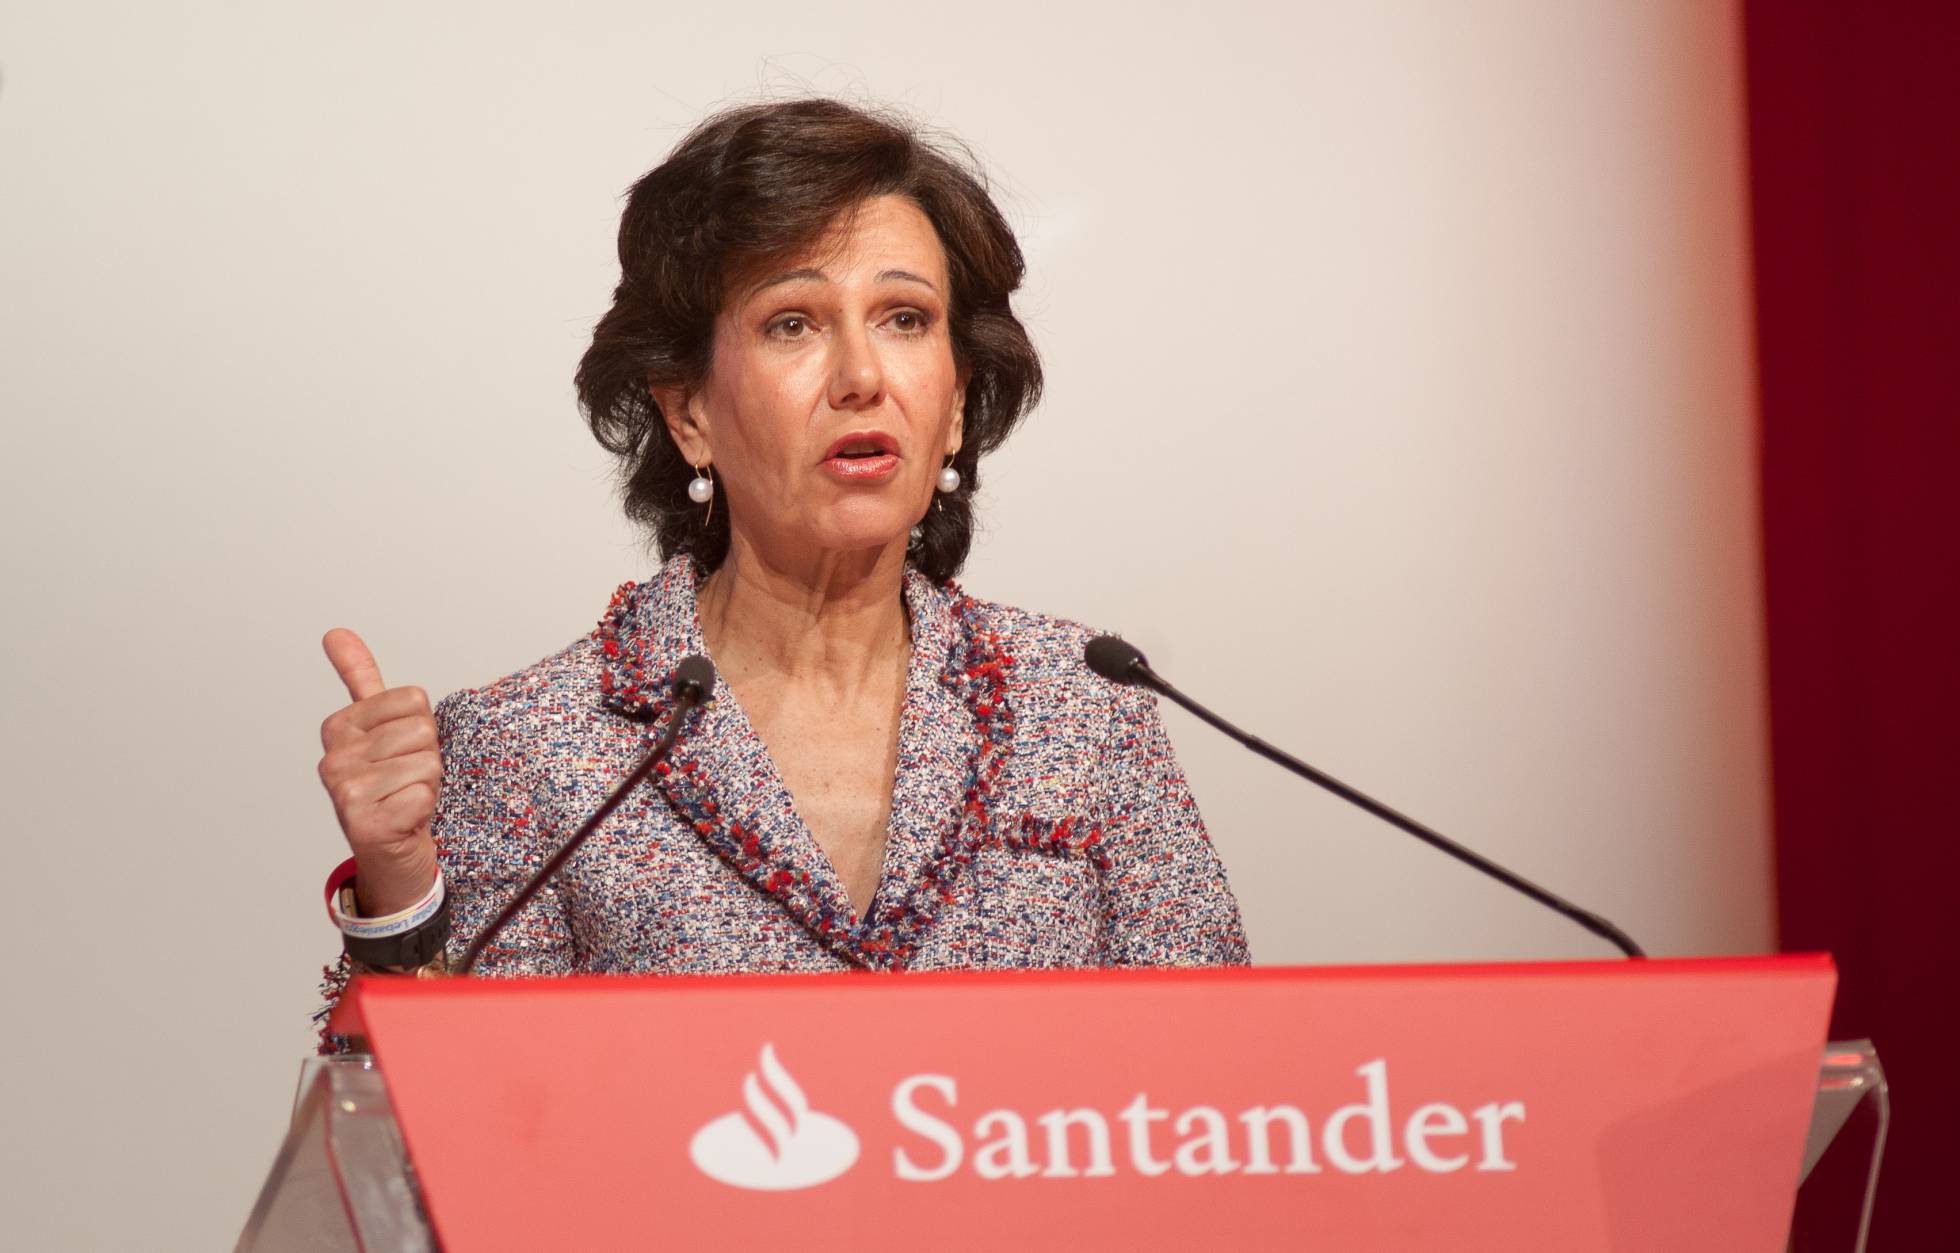 Santander вошел в тройку самых стойких банков ЕС по результатам стресс-теста Европейской банковской организации